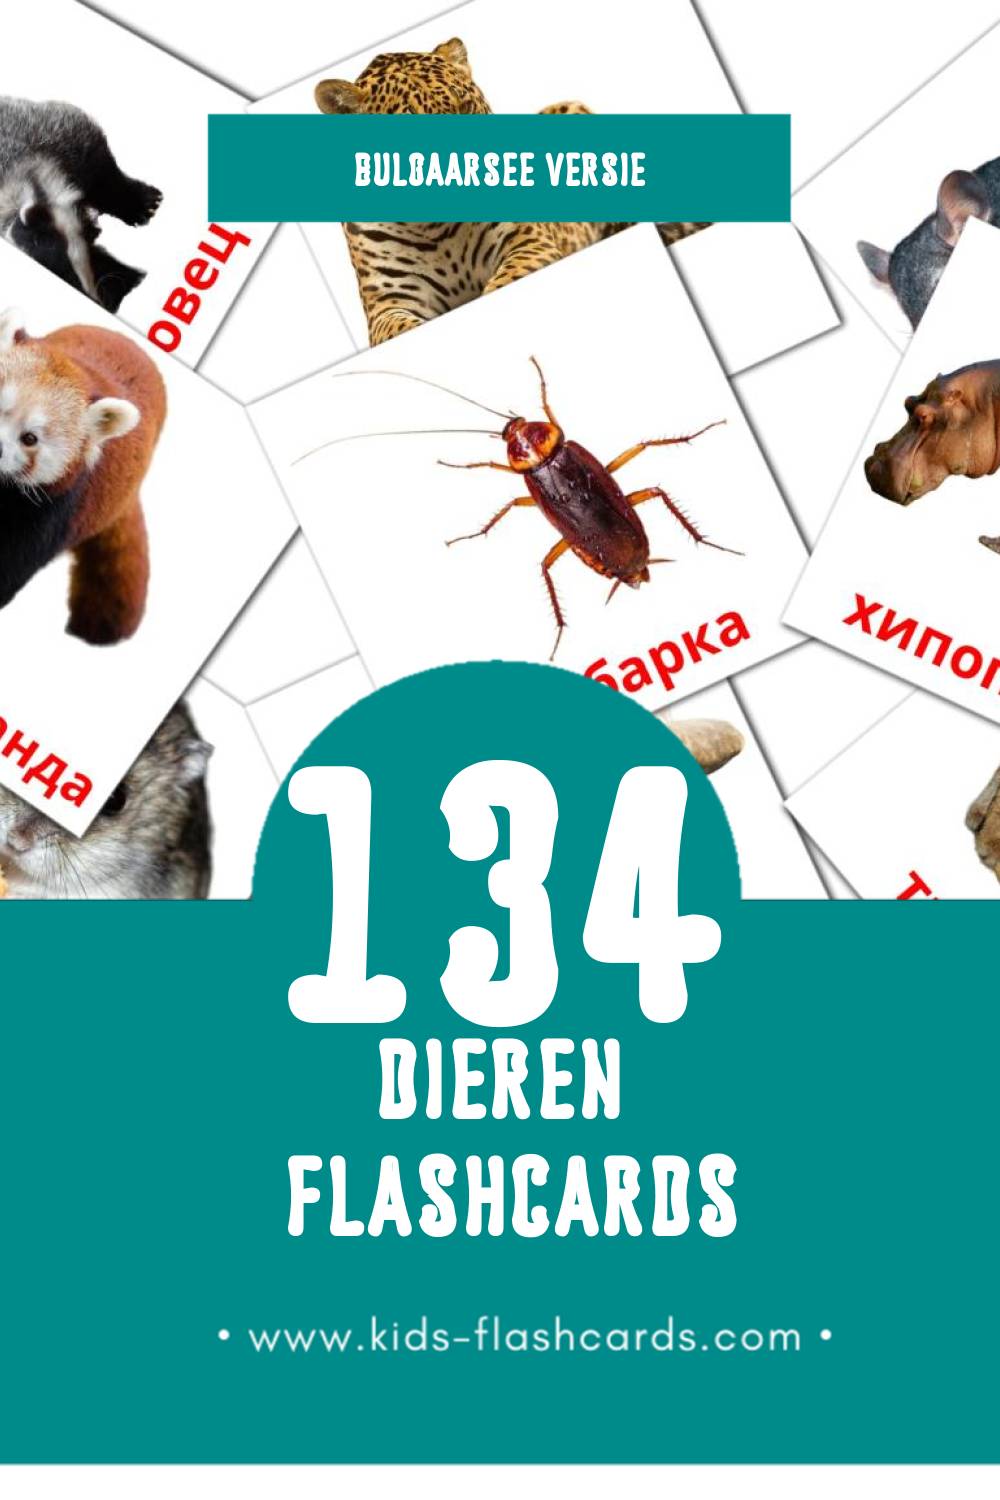 Visuele Животни Flashcards voor Kleuters (134 kaarten in het Bulgaarse)